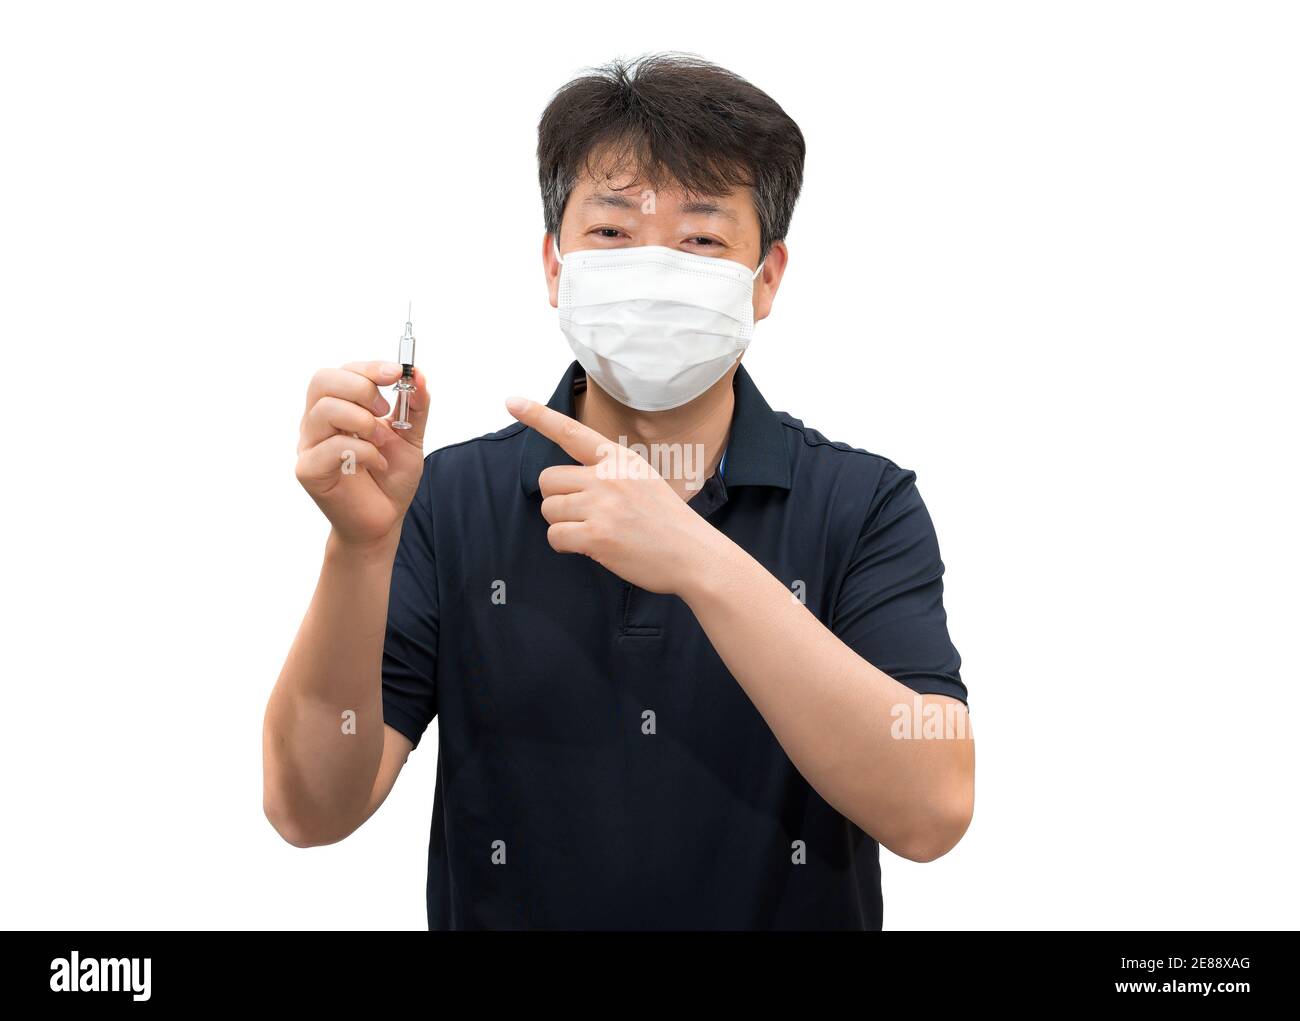 Un uomo asiatico di mezza età che indossa una maschera medica sta tenendo in mano una siringa di vaccino. Foto Stock